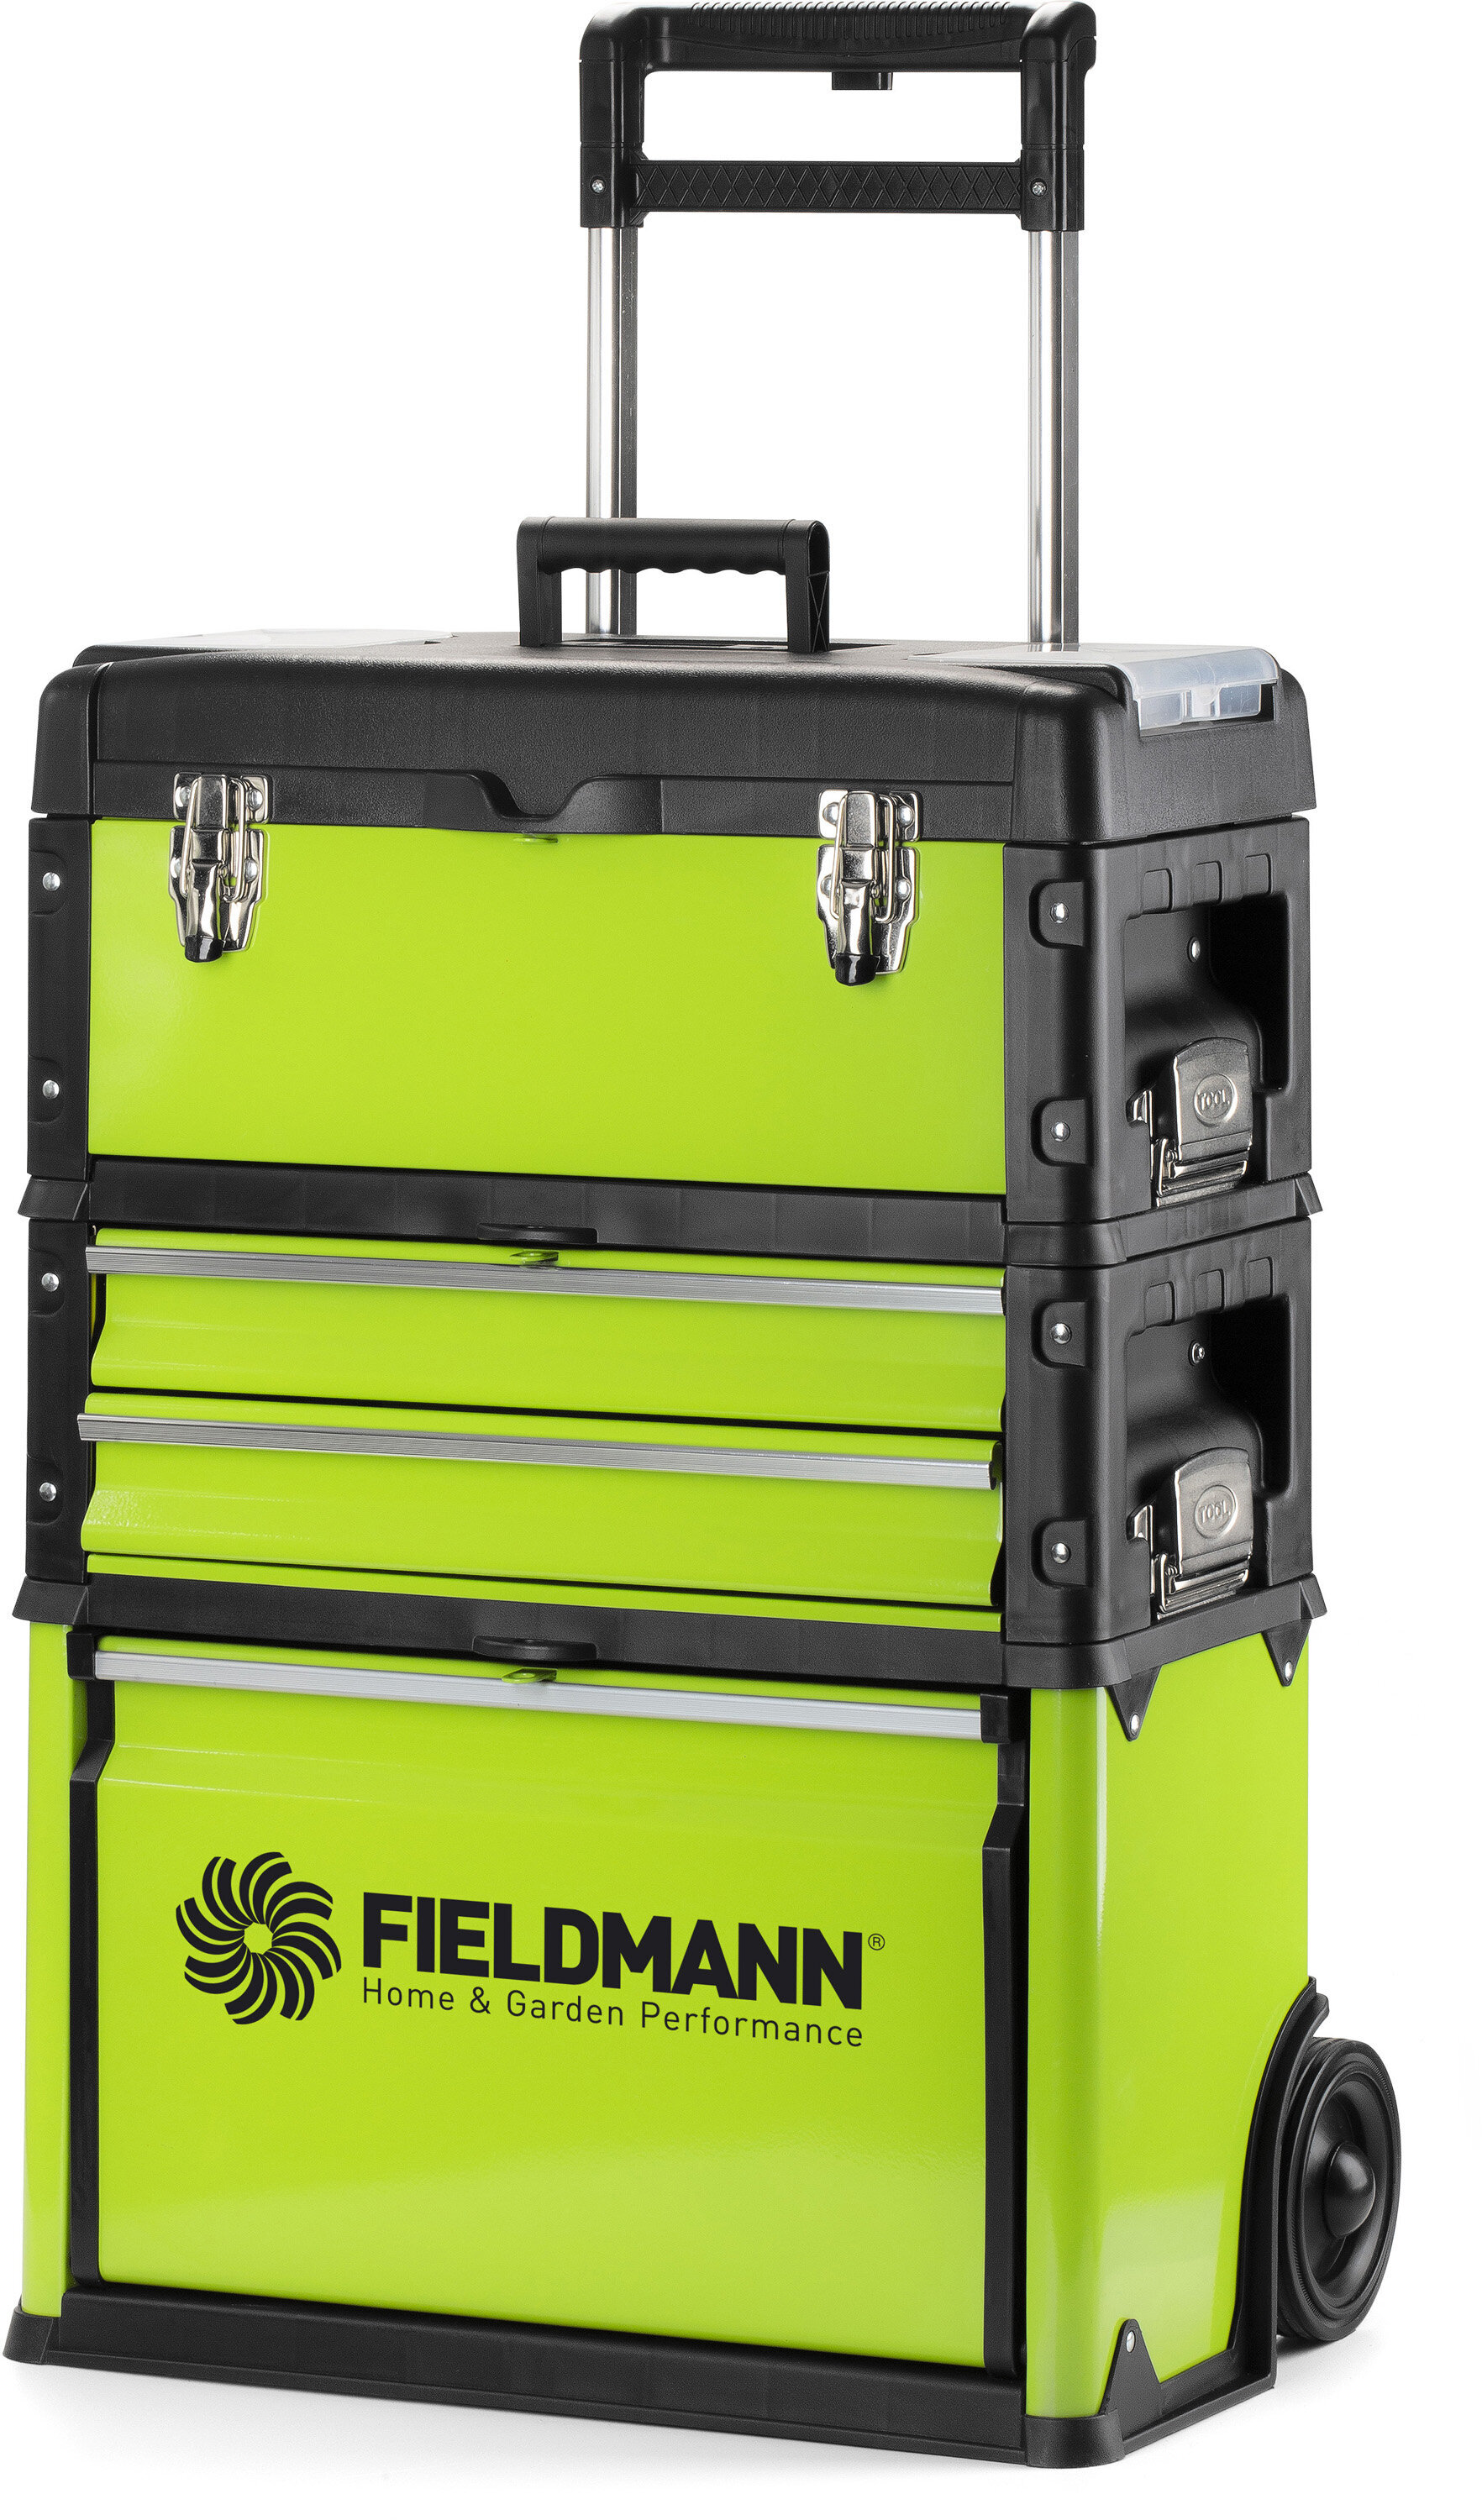 Metalinė įrankių dėžė Fieldmann FDN 4150 kaina | pigu.lt